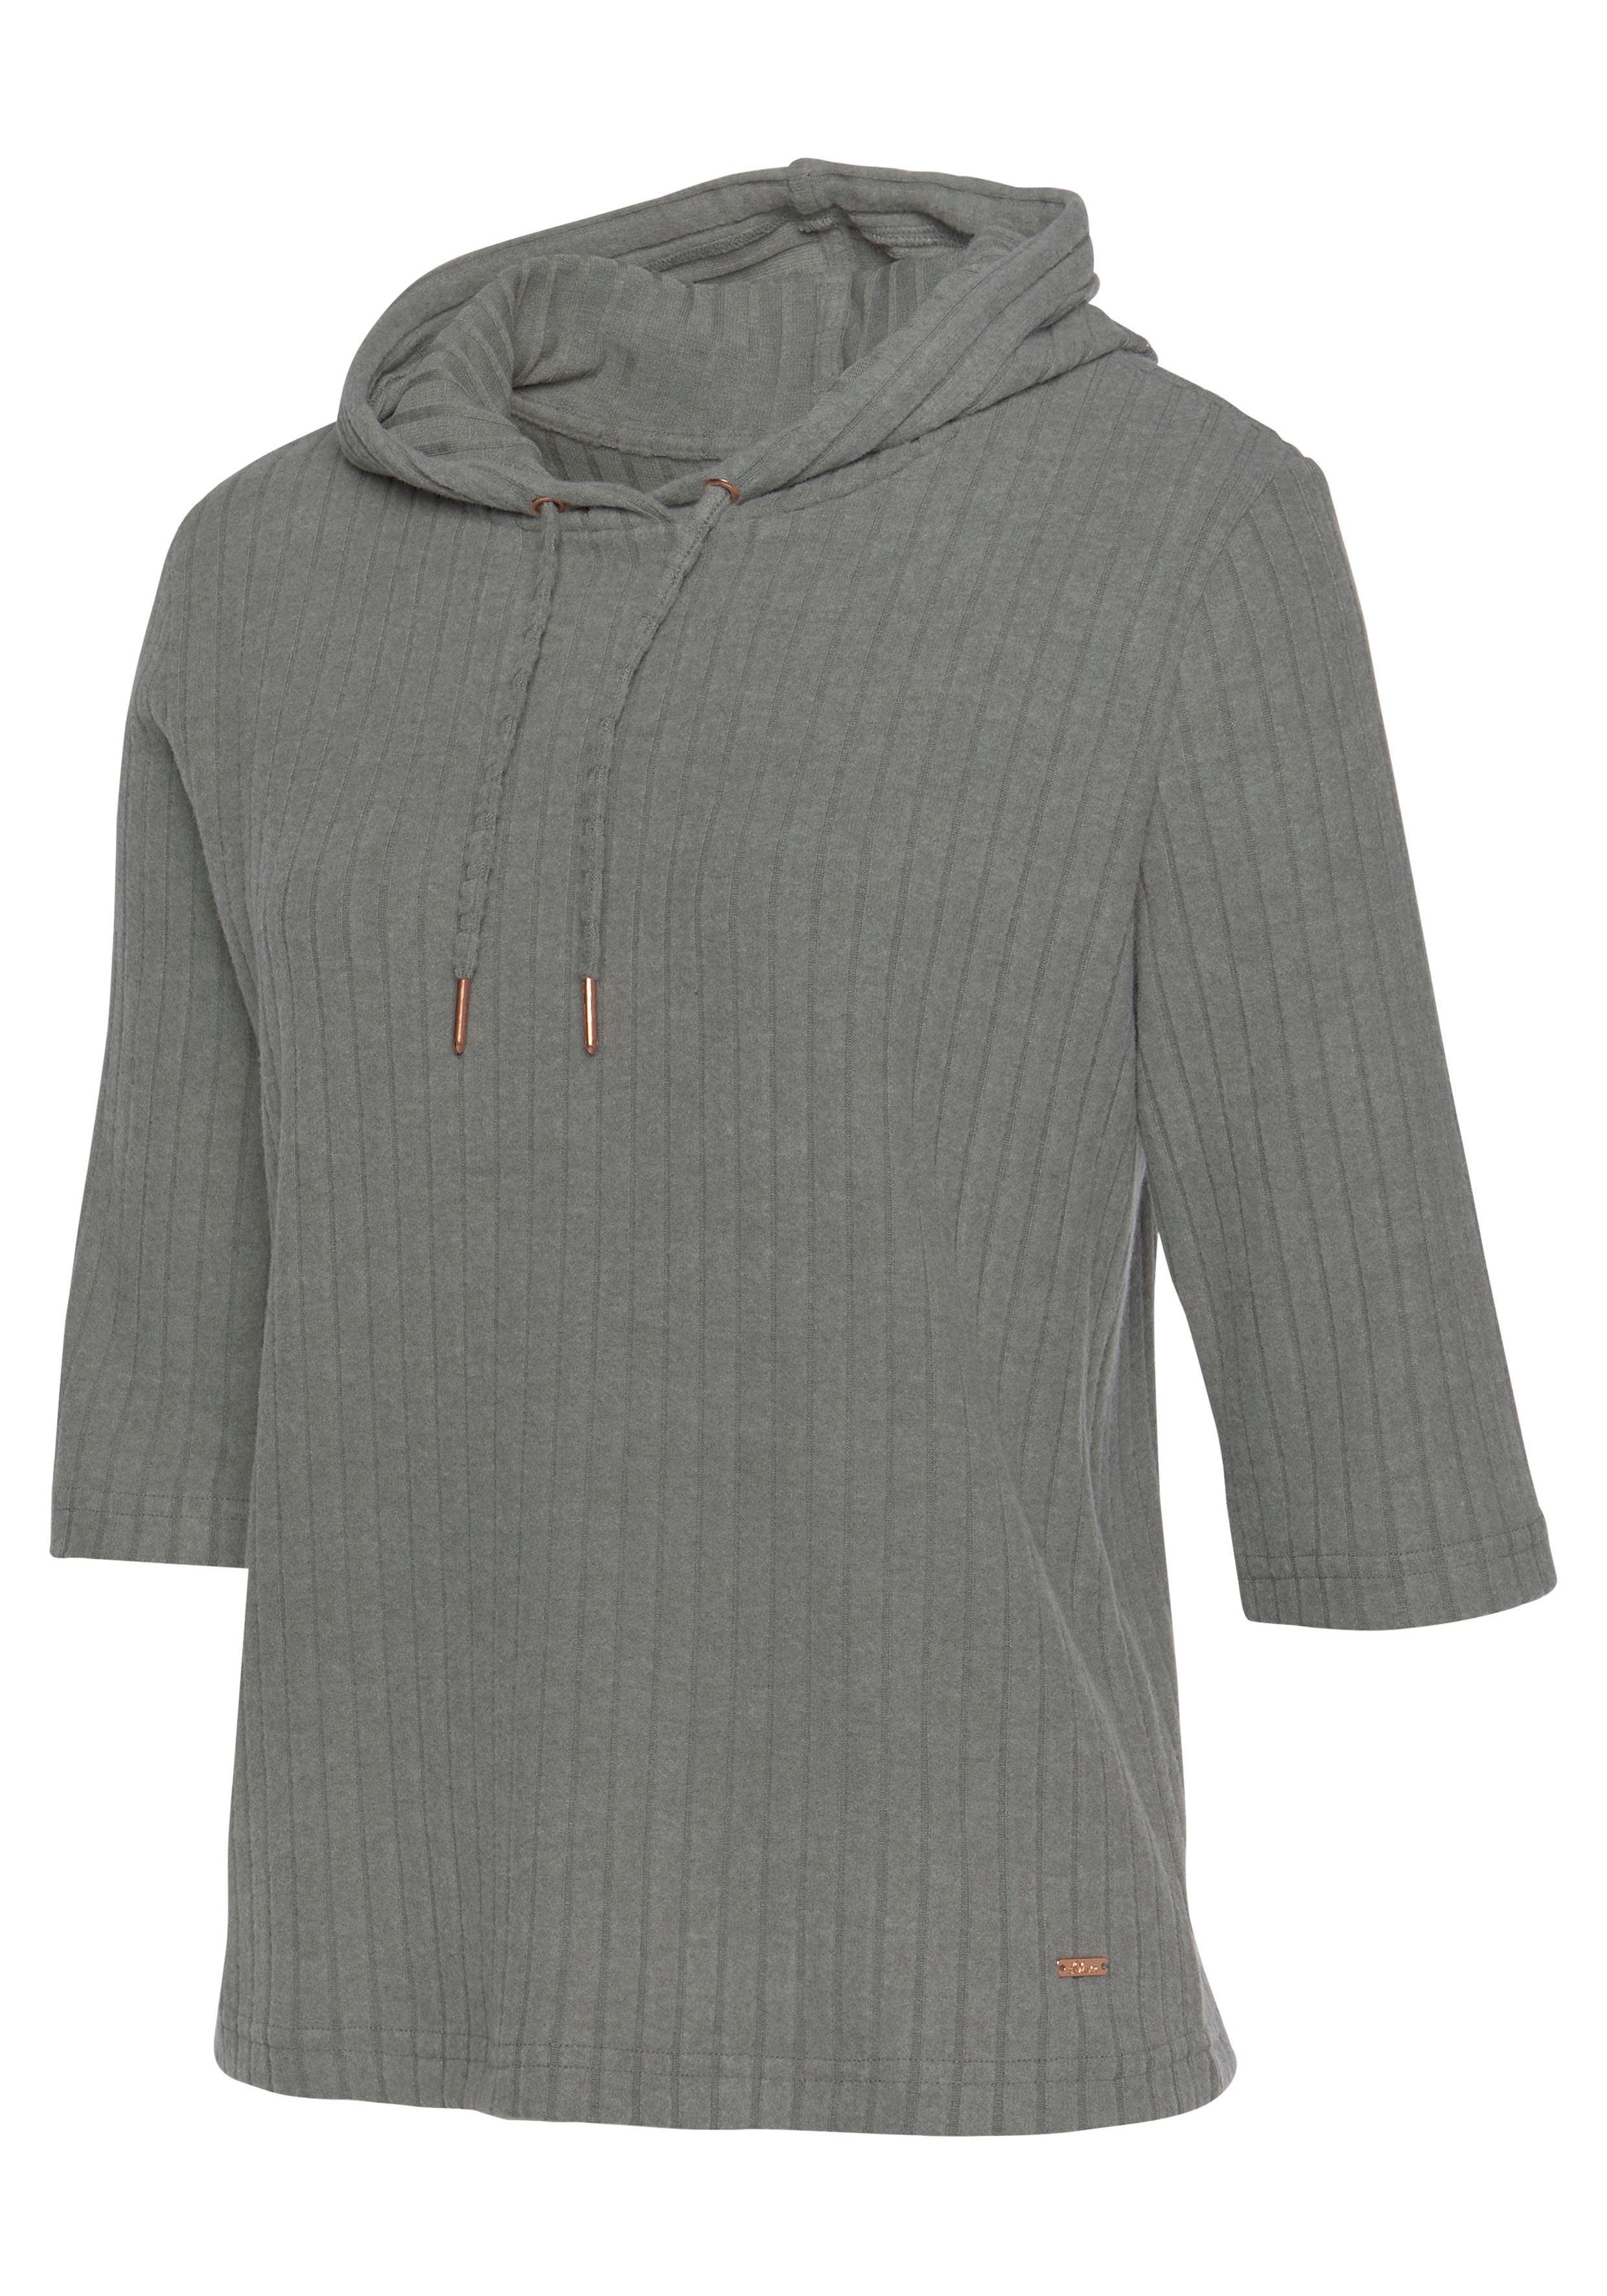 grau Kapuzensweatshirt aus Loungeanzug Rippstrick, nachhaltigem s.Oliver